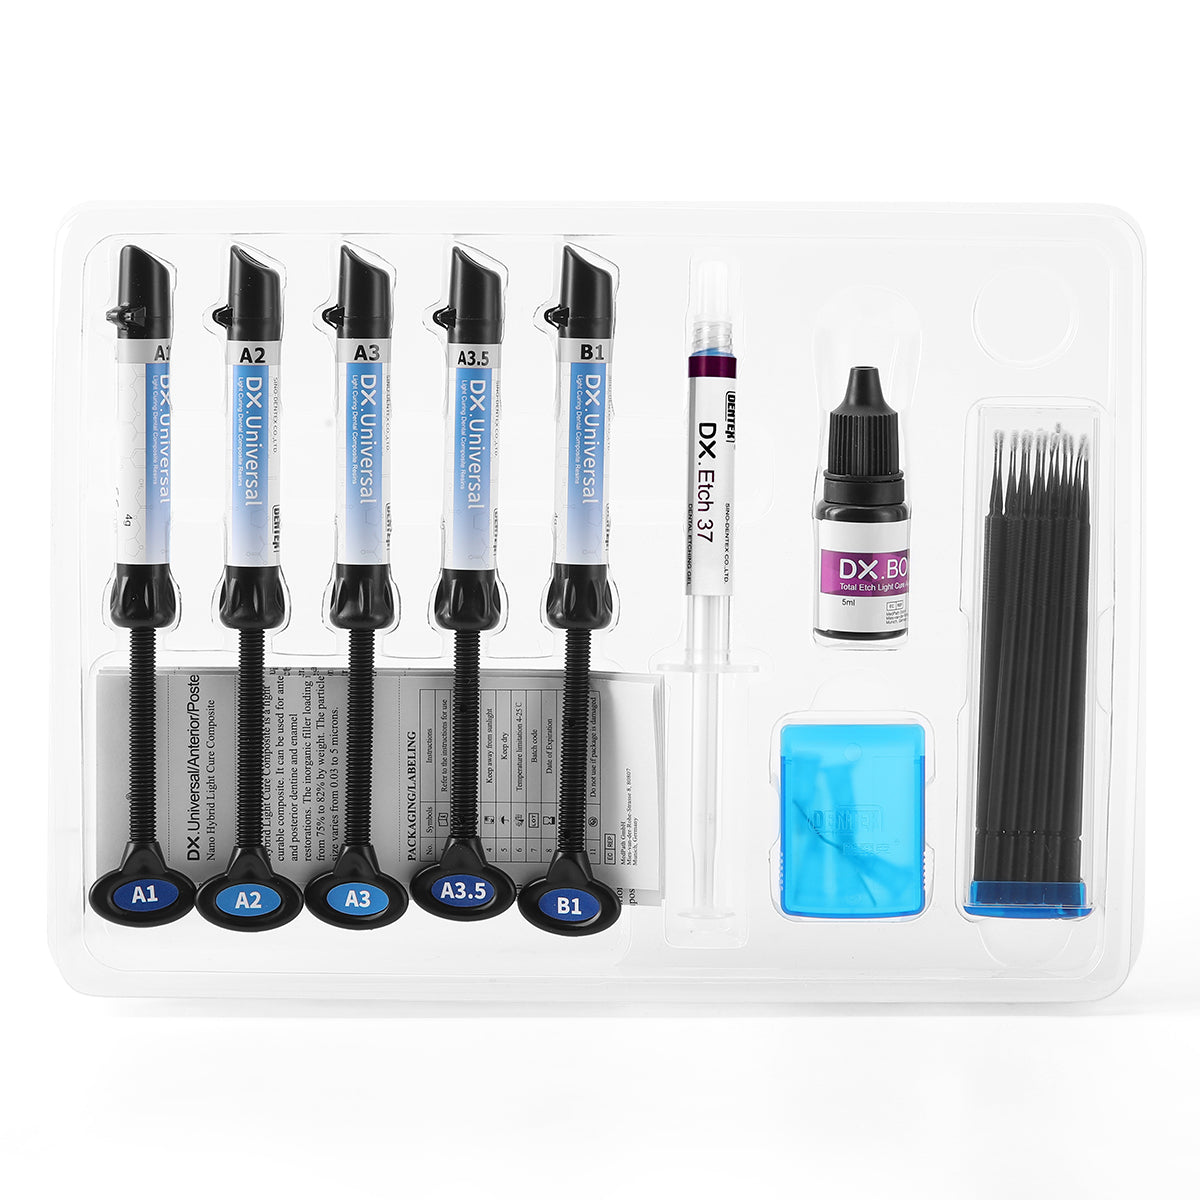 Light Cure Hybrid Dental Resin Composite 5 Syringe Kit A1 A2 A3 A3.5 B1 - azdentall.com